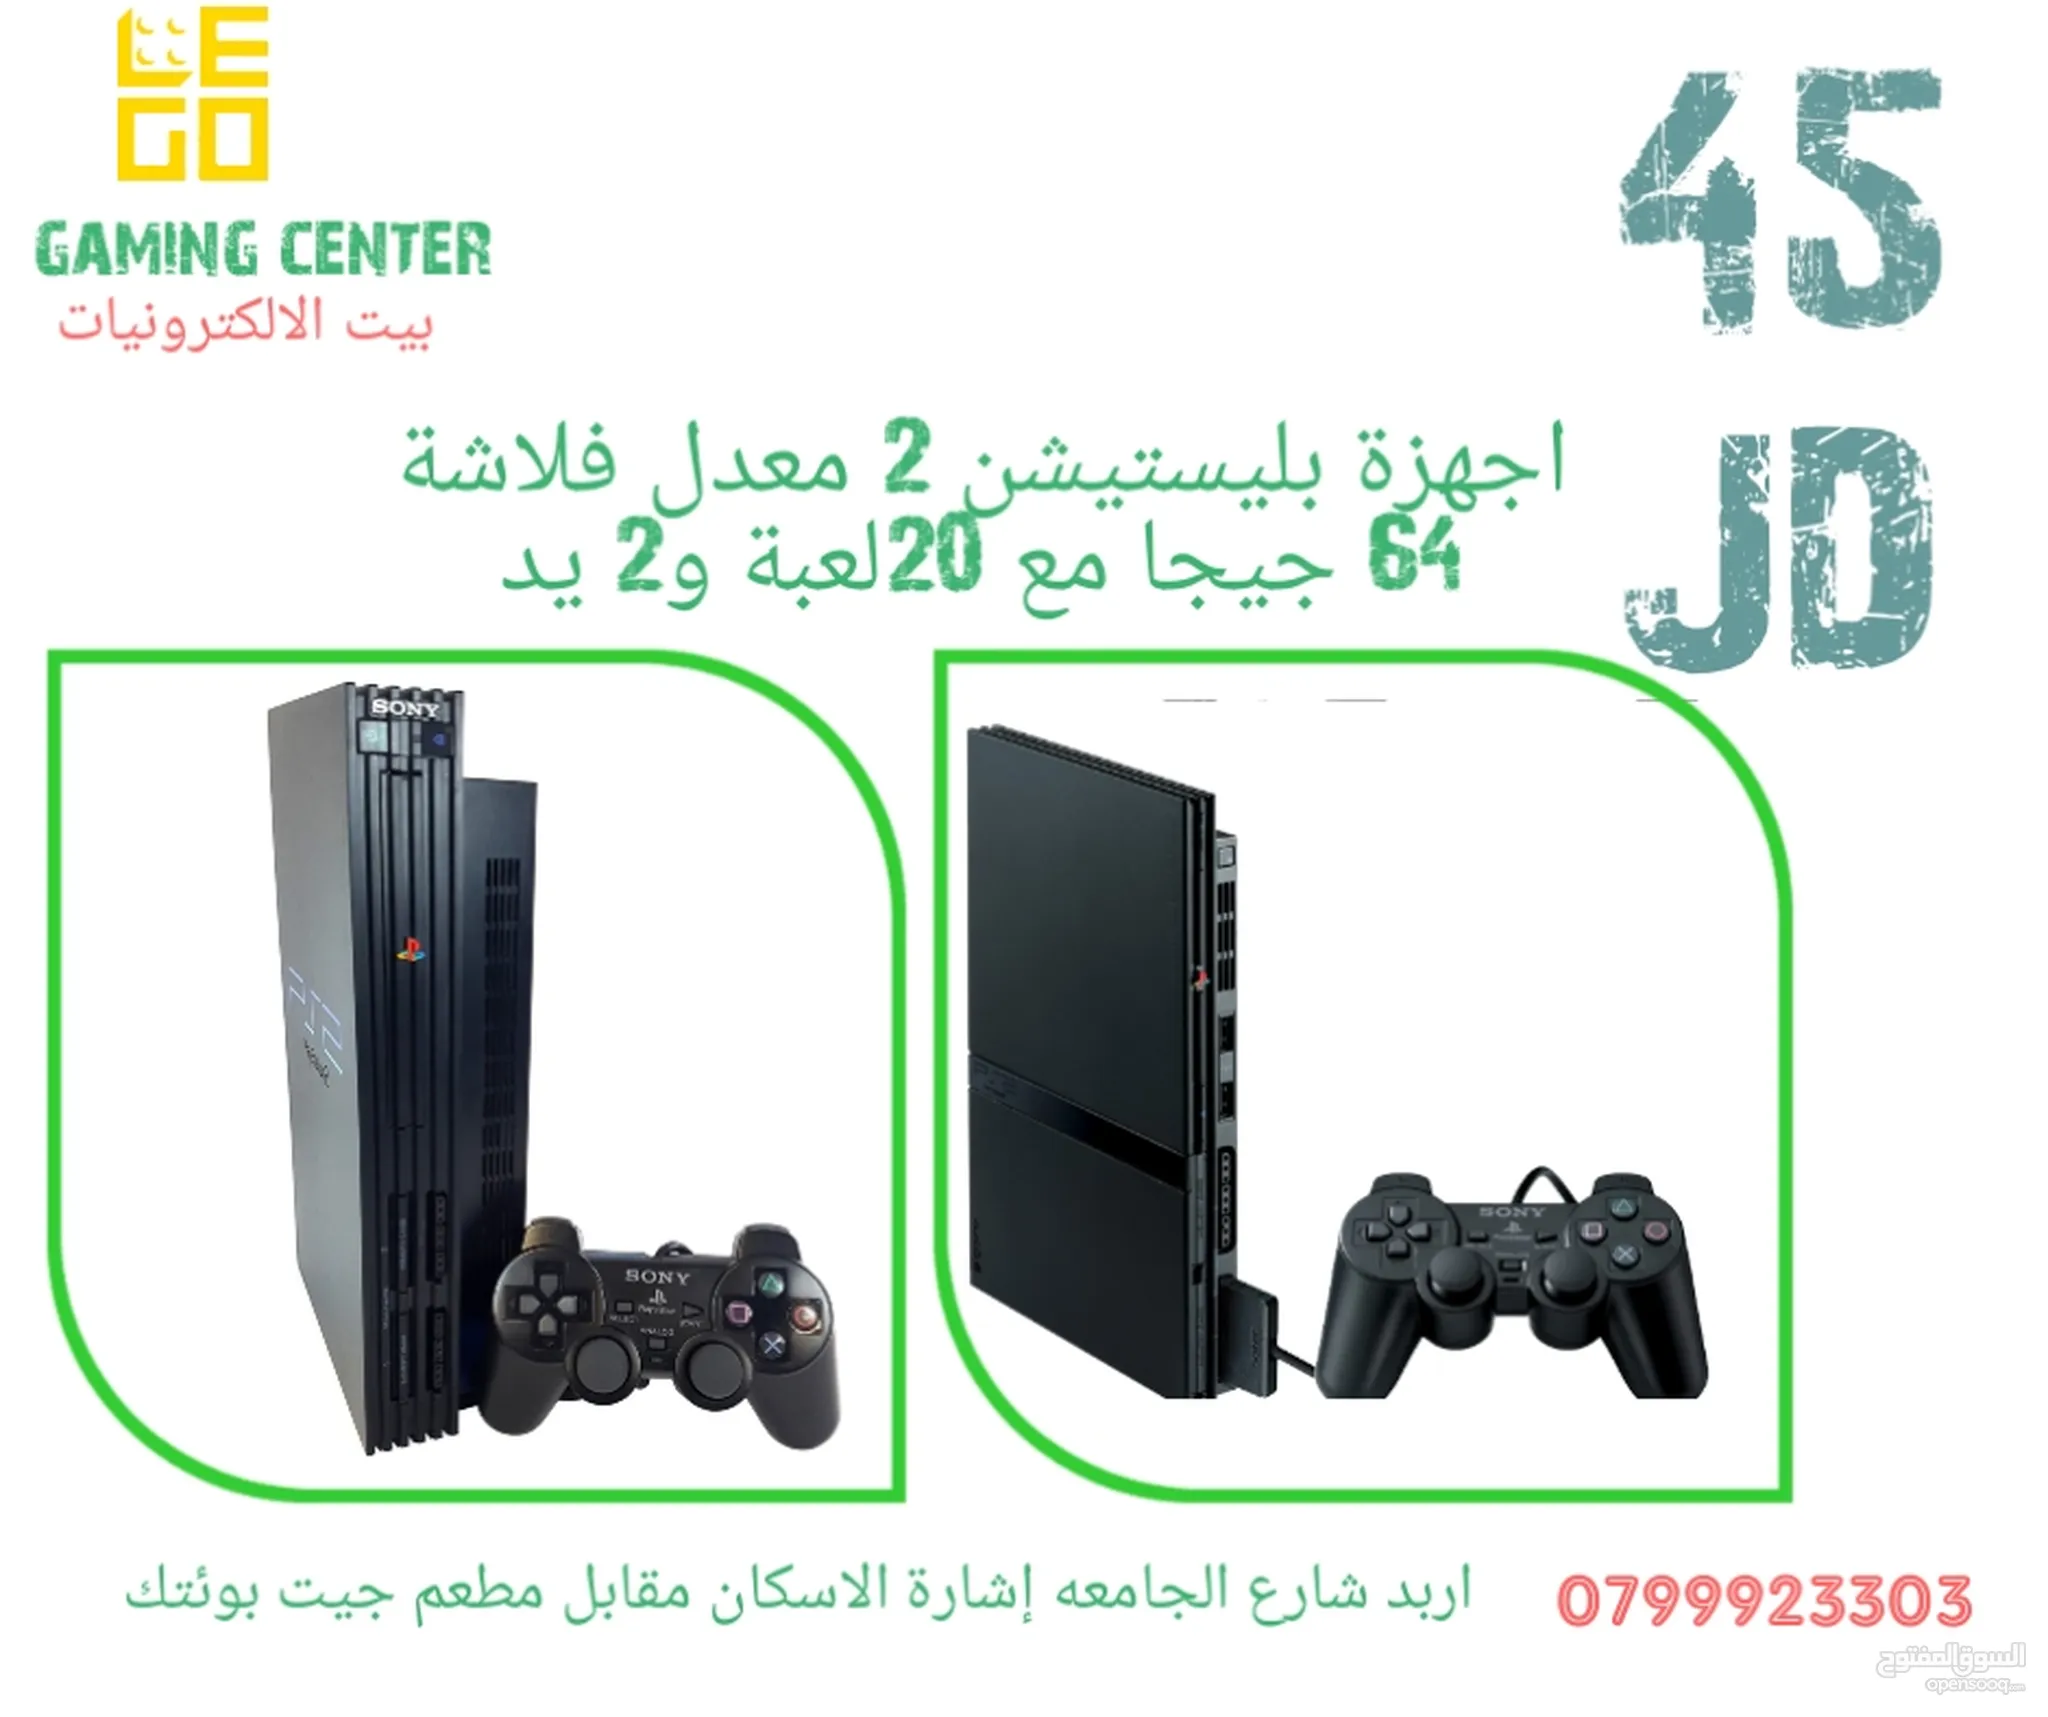 اجهزة بلايستيشن 2 للبيع : ارخص الاسعار : بلايستيشن 2 جديد ومستعمل : الأردن  | السوق المفتوح